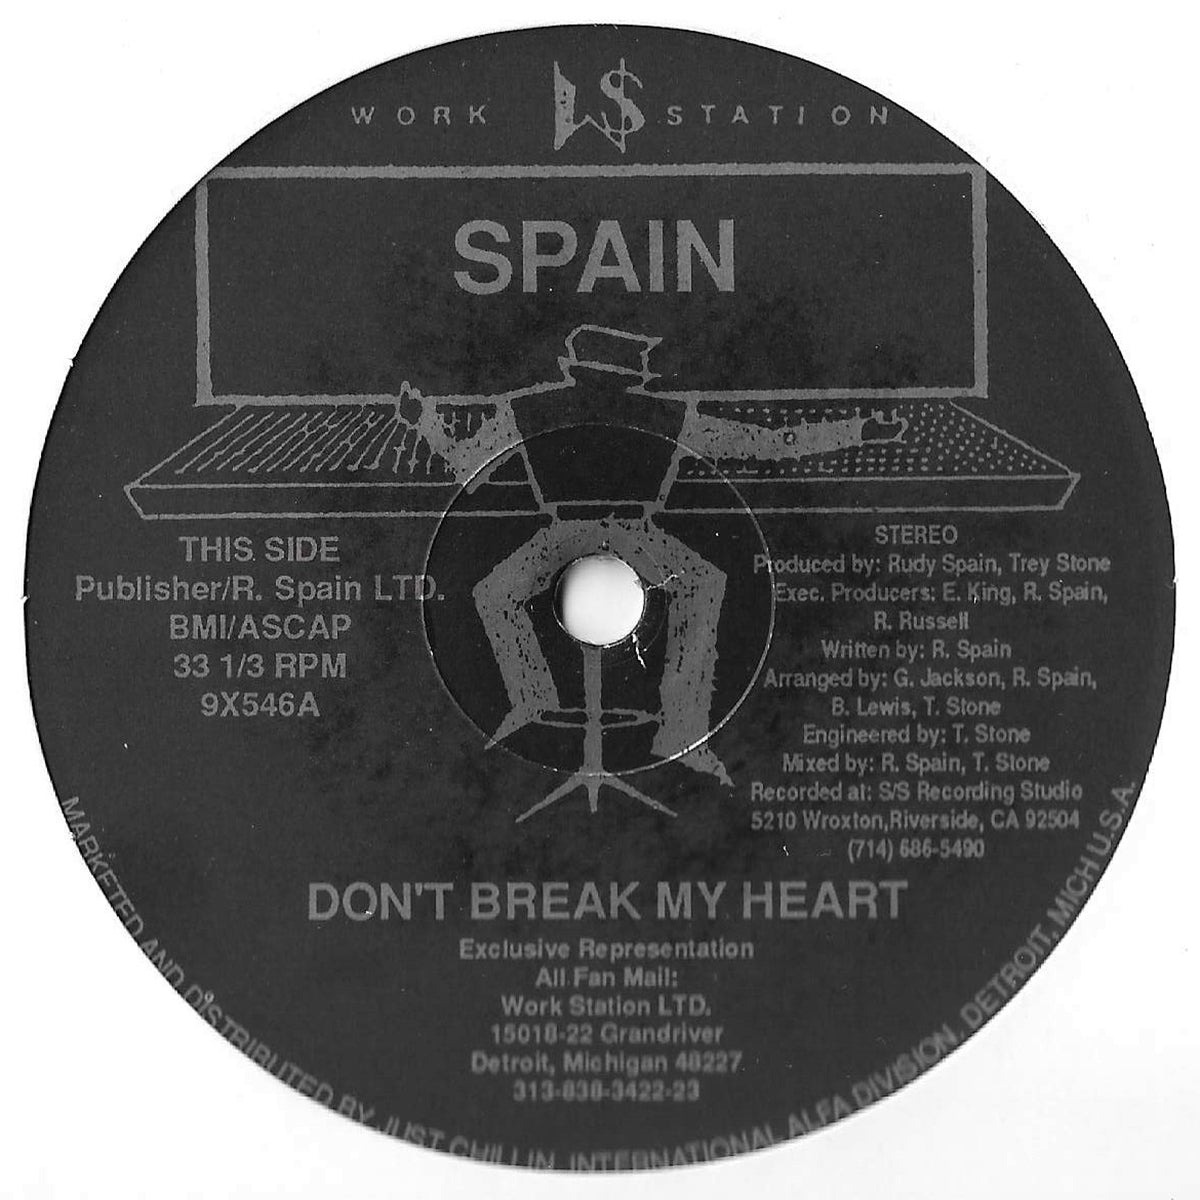 Spain - Don't Break My Heart